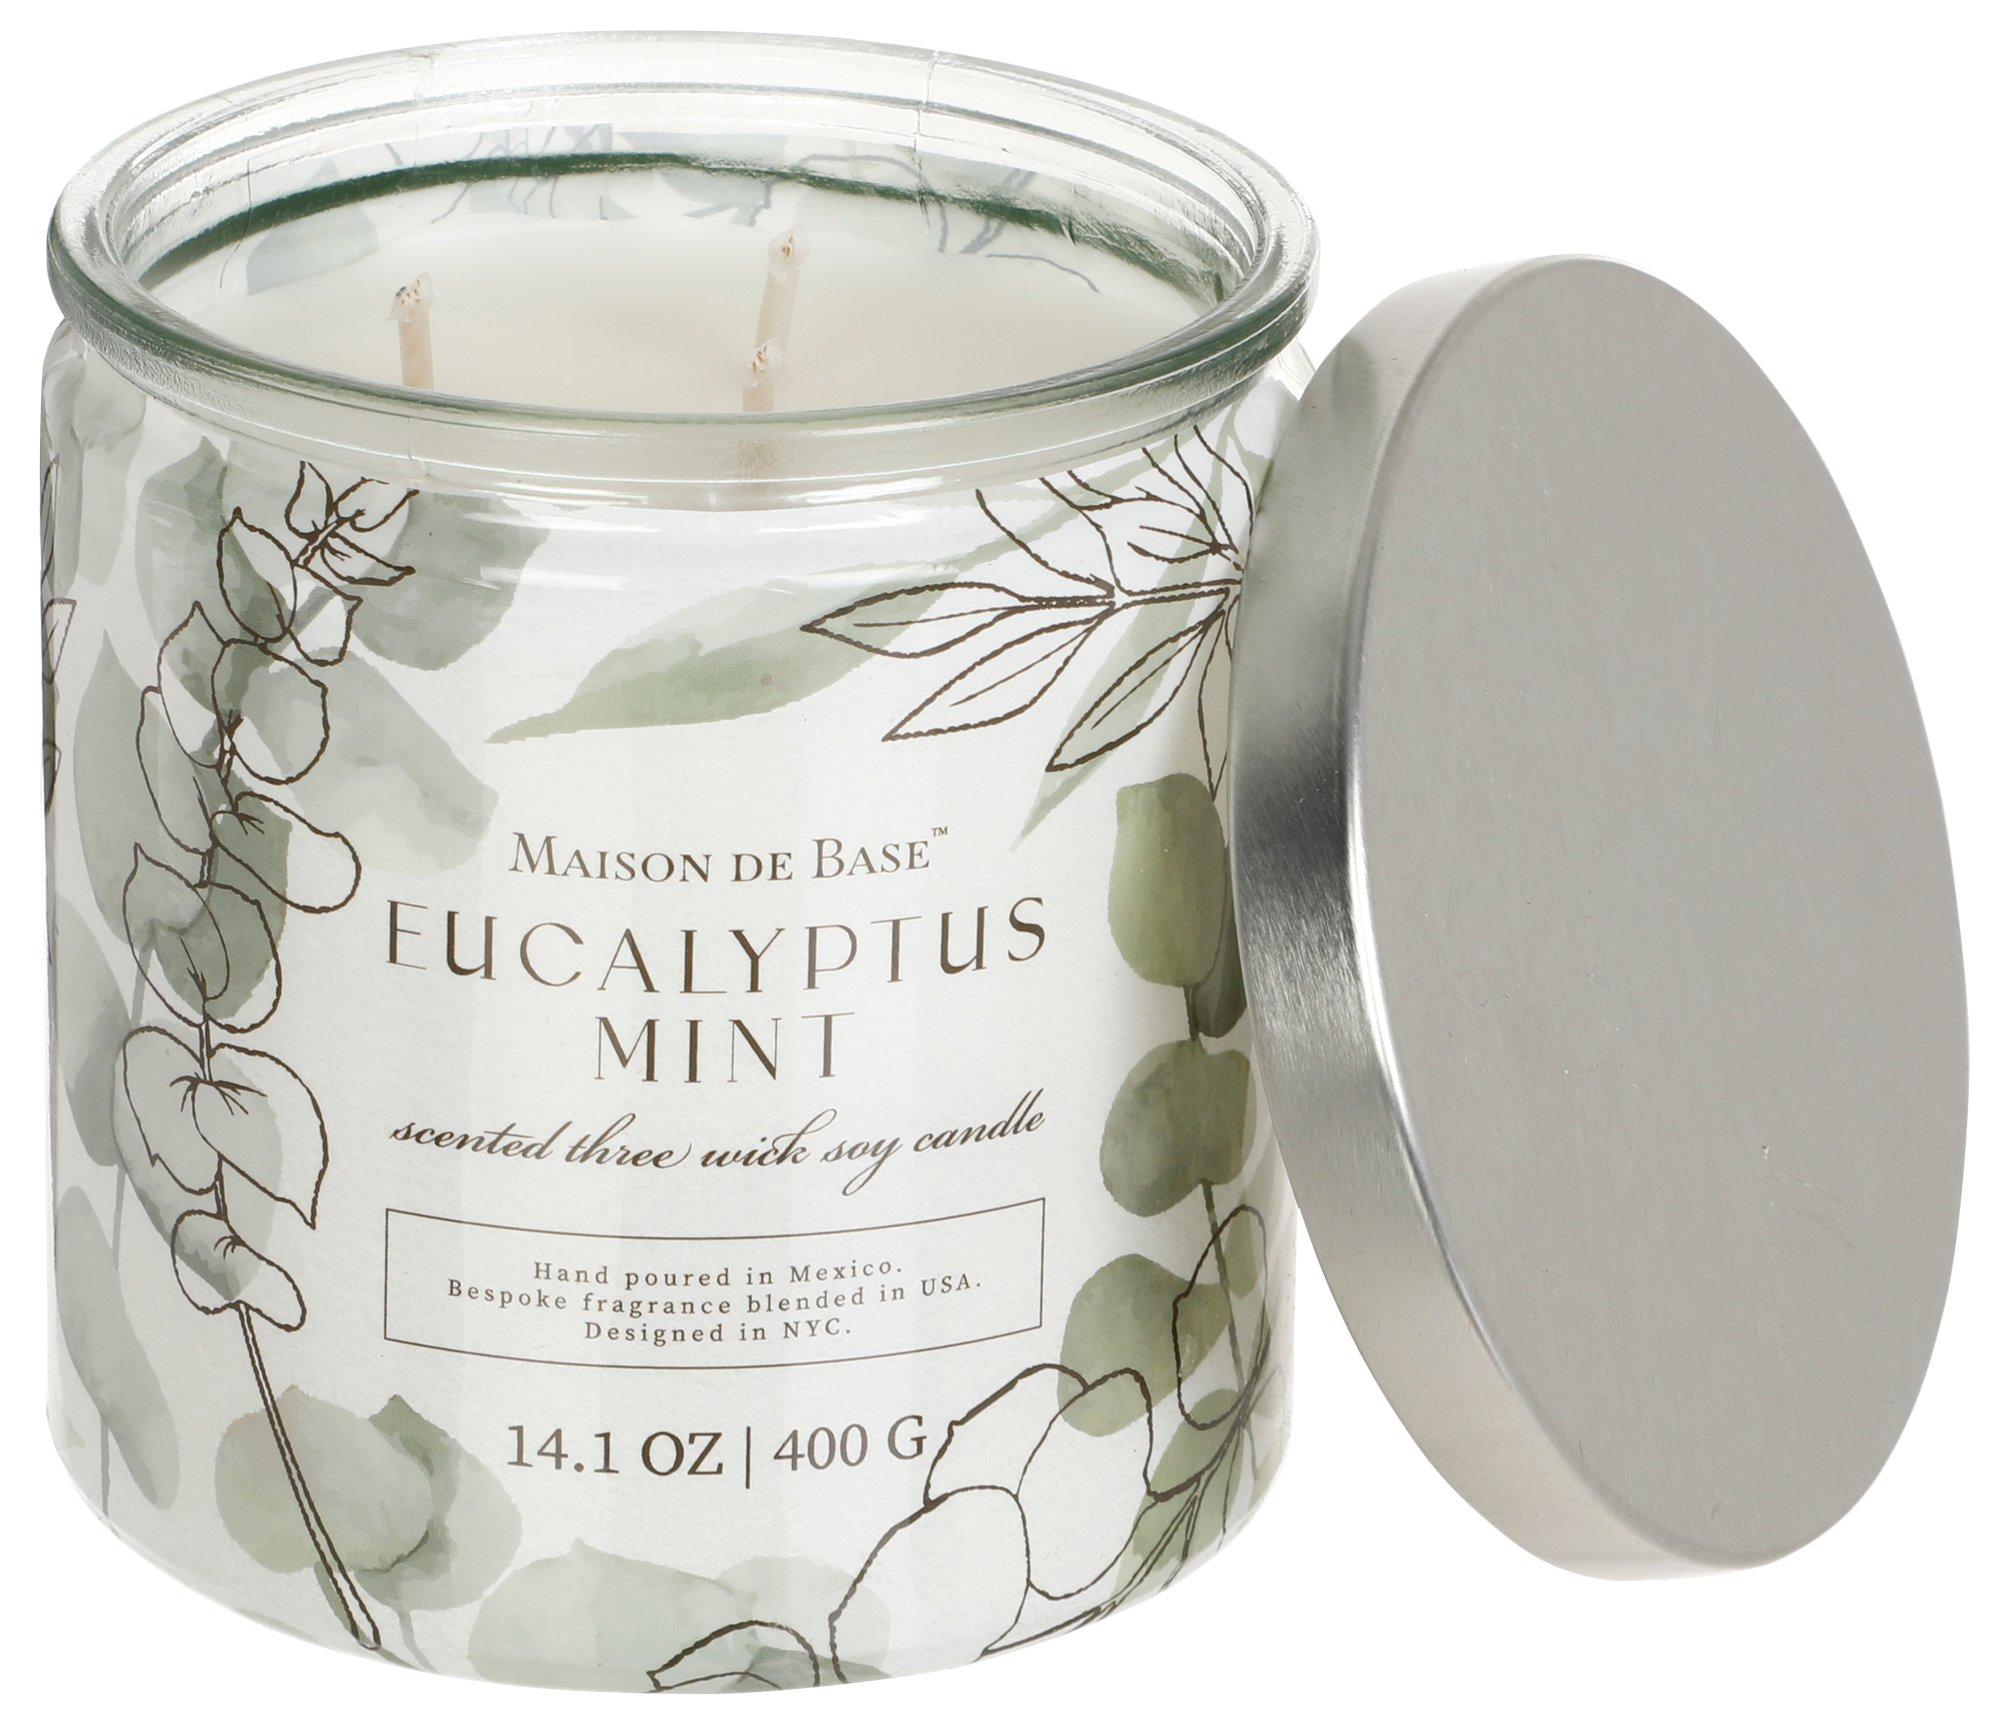 14 oz Eucalyptus Mint Candle